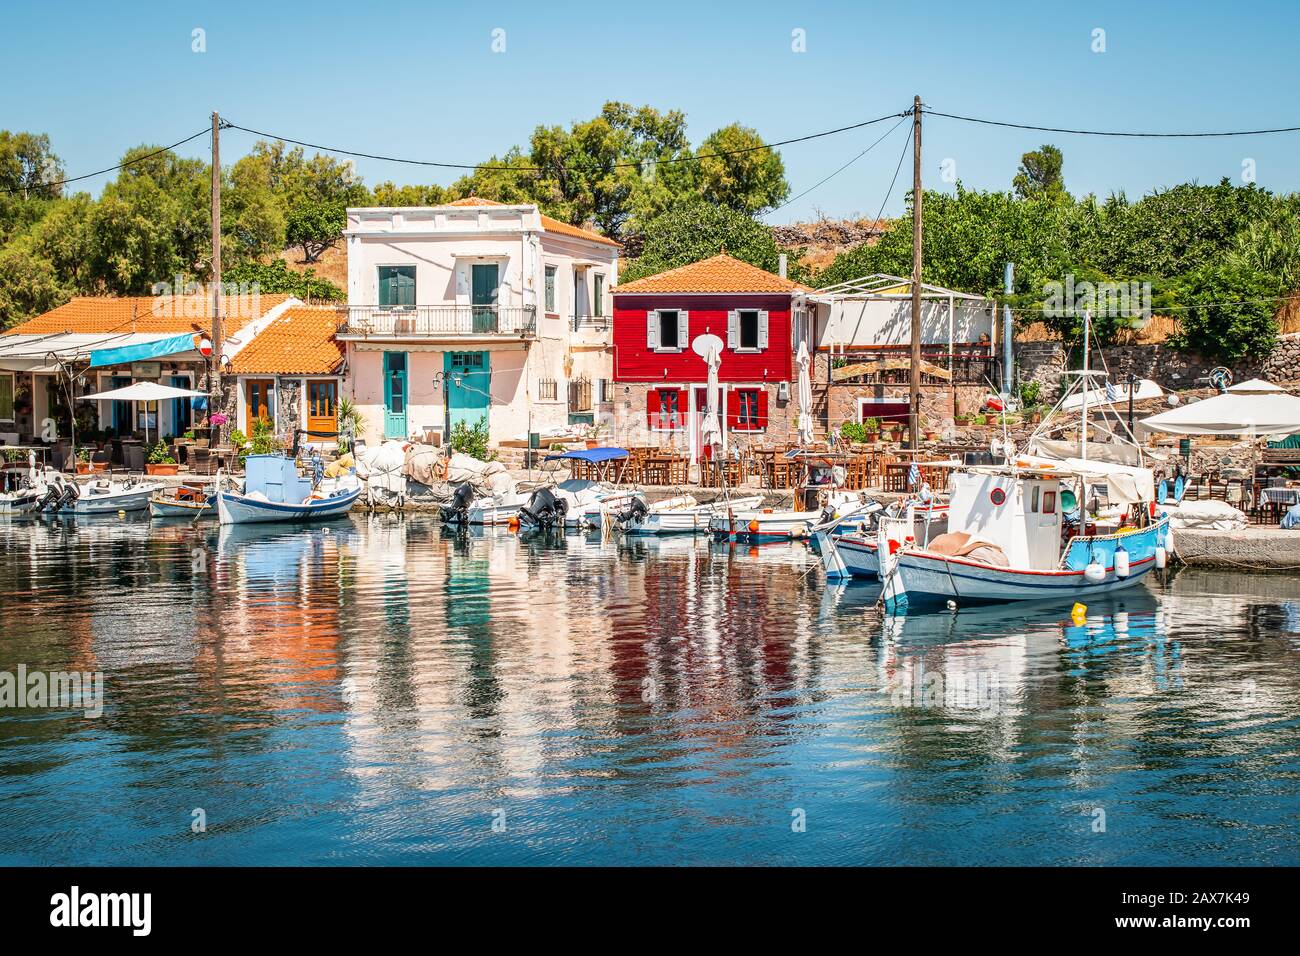 Vista del puerto y la ciudad de Molyvos (Mithymna), isla Lesvos (Lesbos), Grecia. Foto de stock